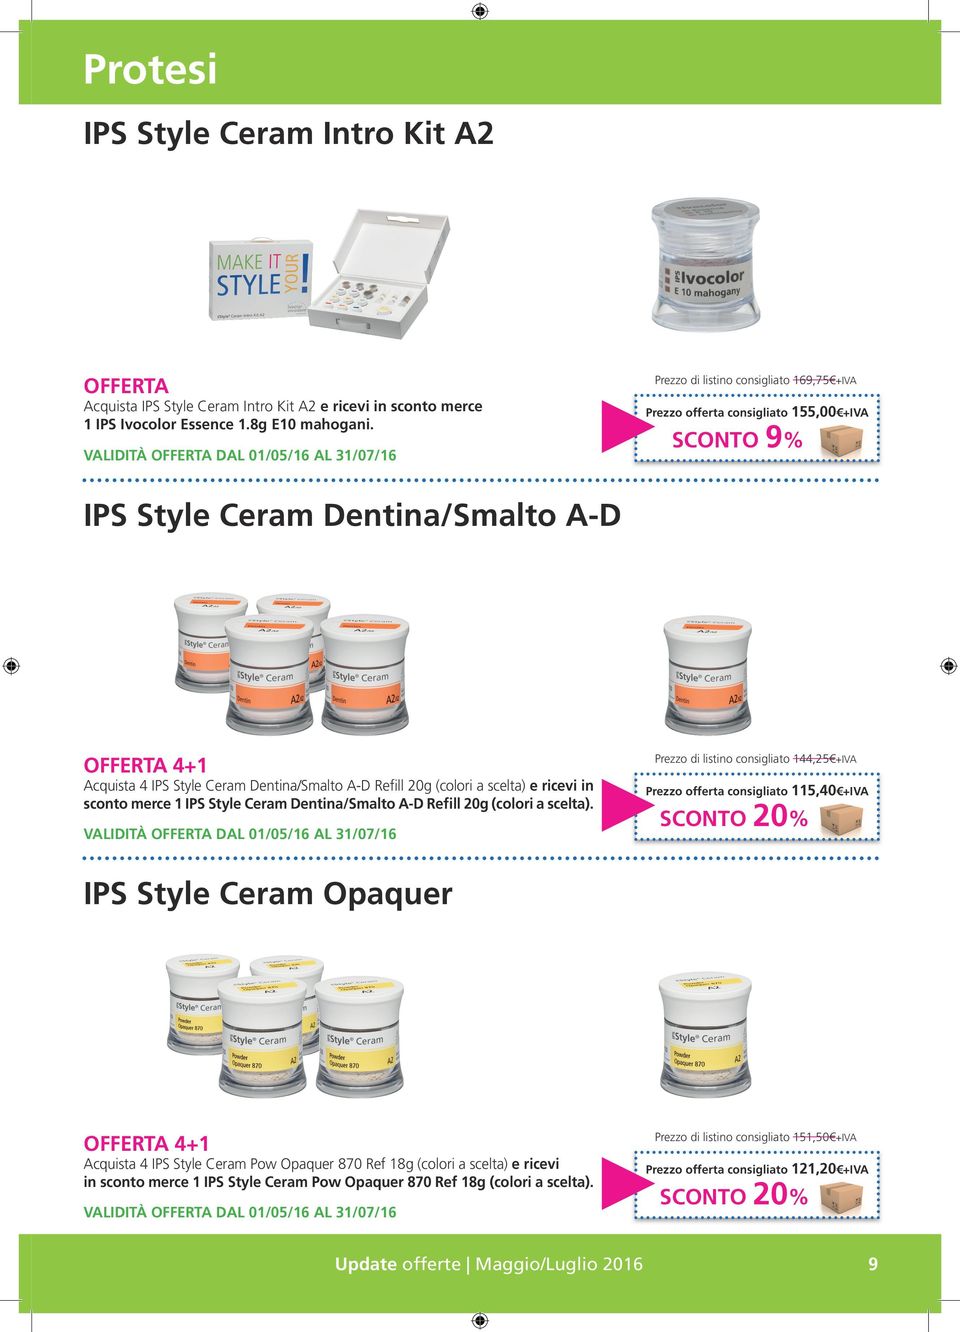 in sconto merce 1 IPS Style Ceram Dentina/Smalto A-D Refill 20g (colori a scelta).